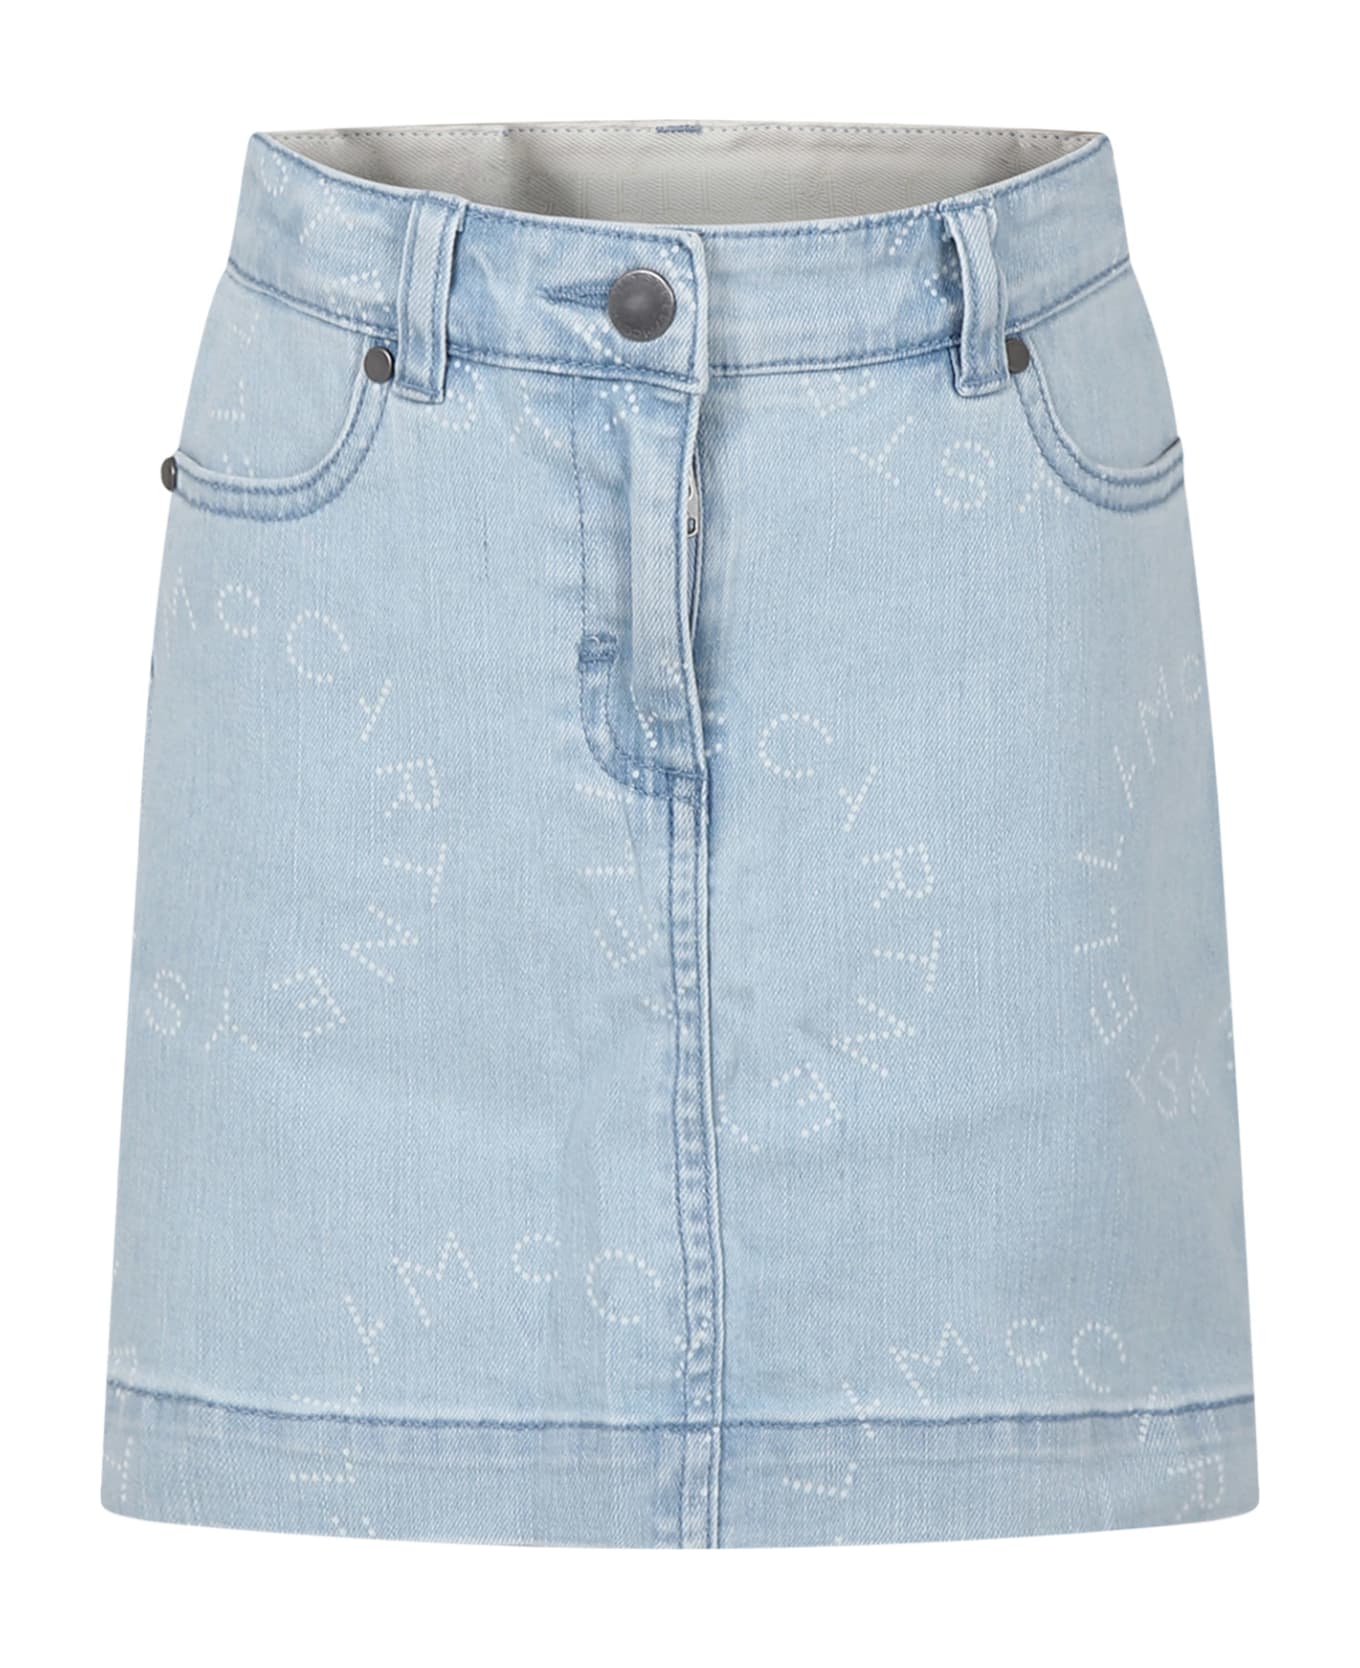 Stella McCartney Denim Skirt For Girl With Logo - BLUE ボトムス